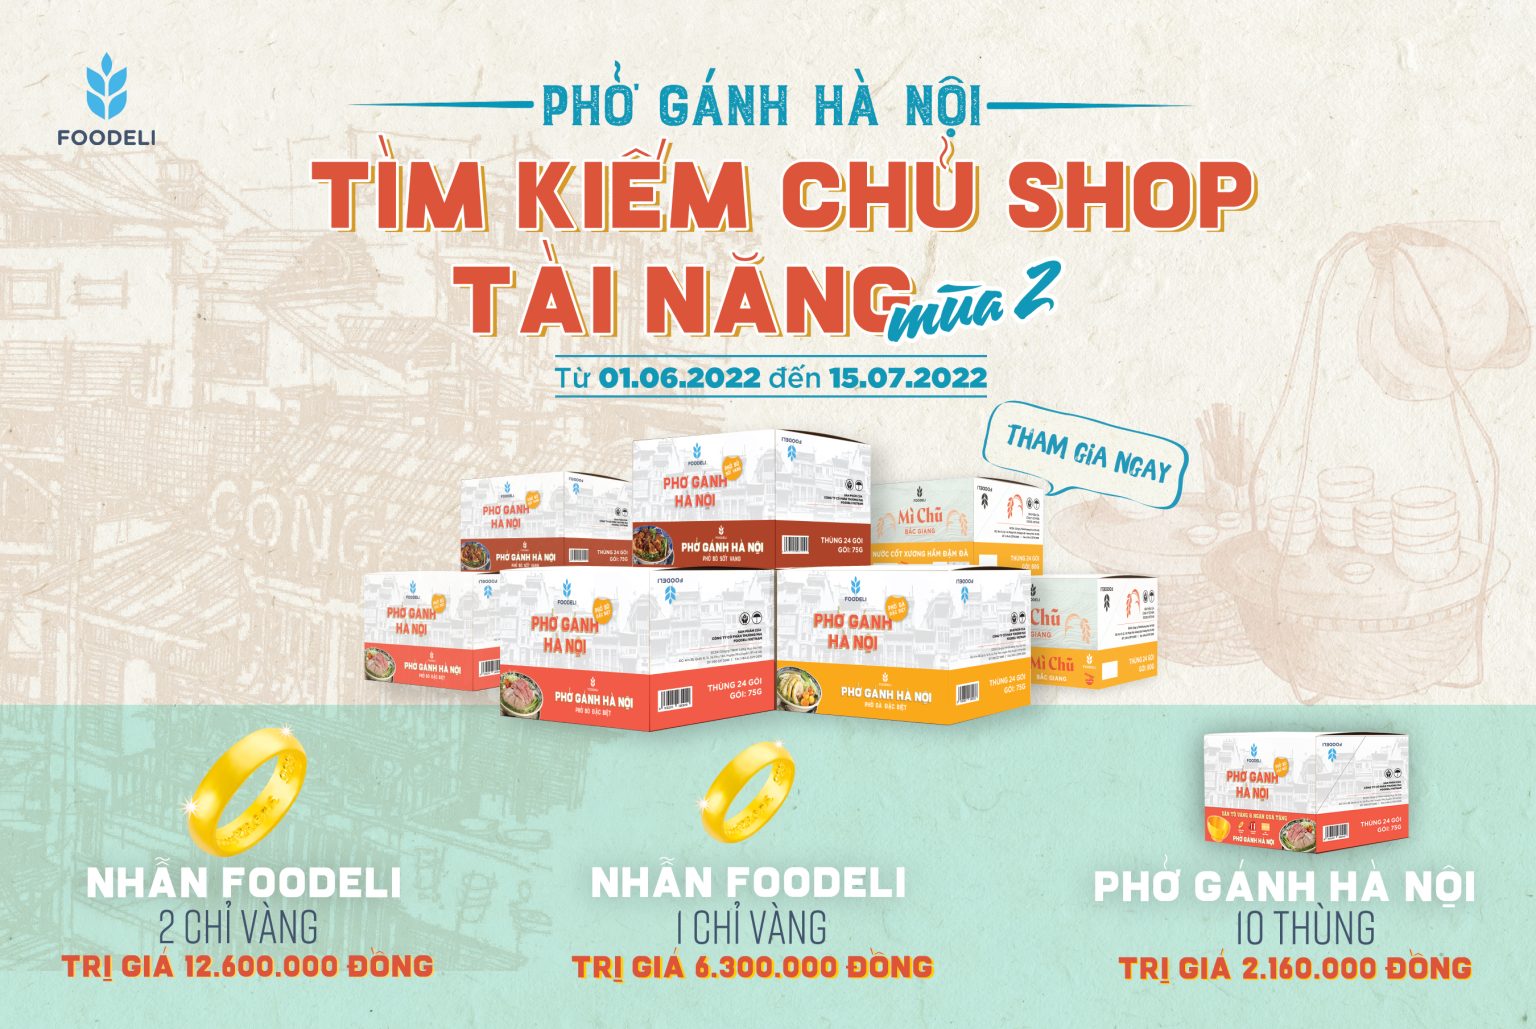 Chu shop tai nang pho ganh